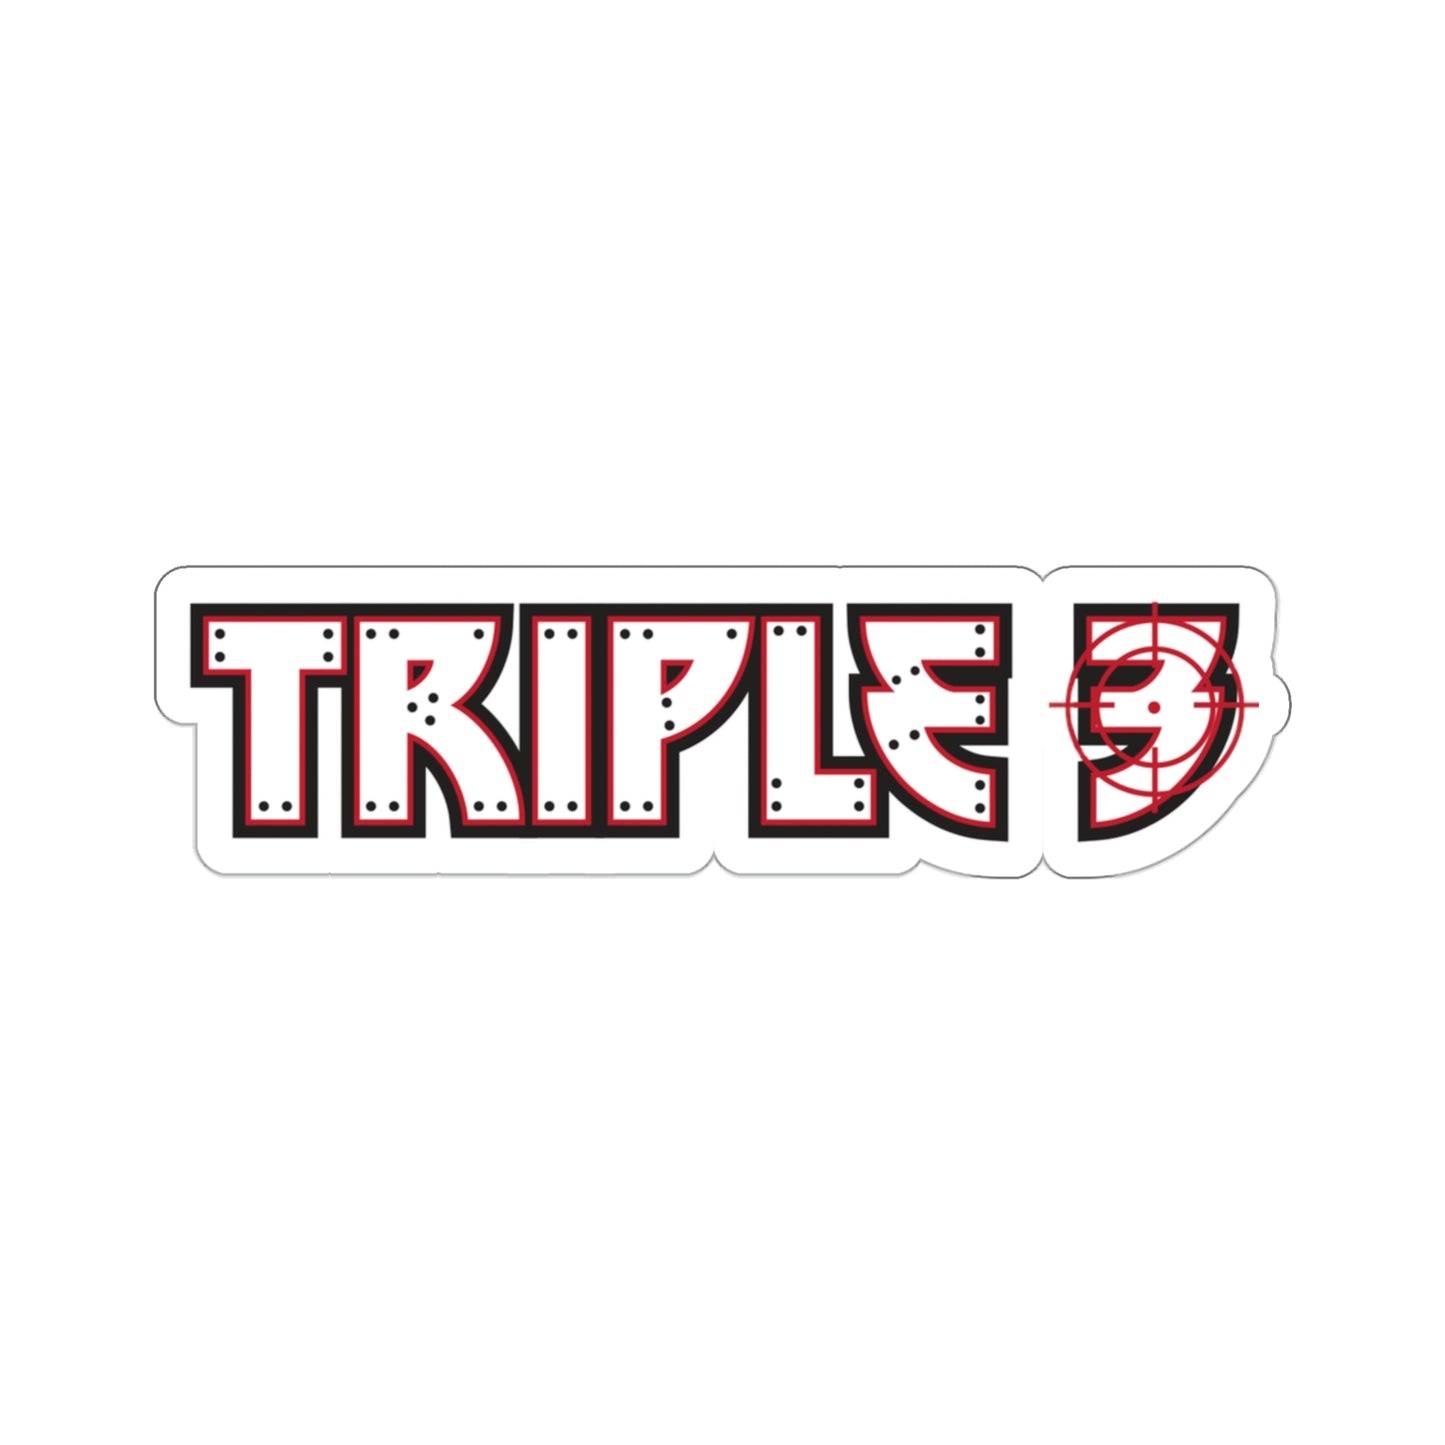 Black Ocean: Triple 3 sticker